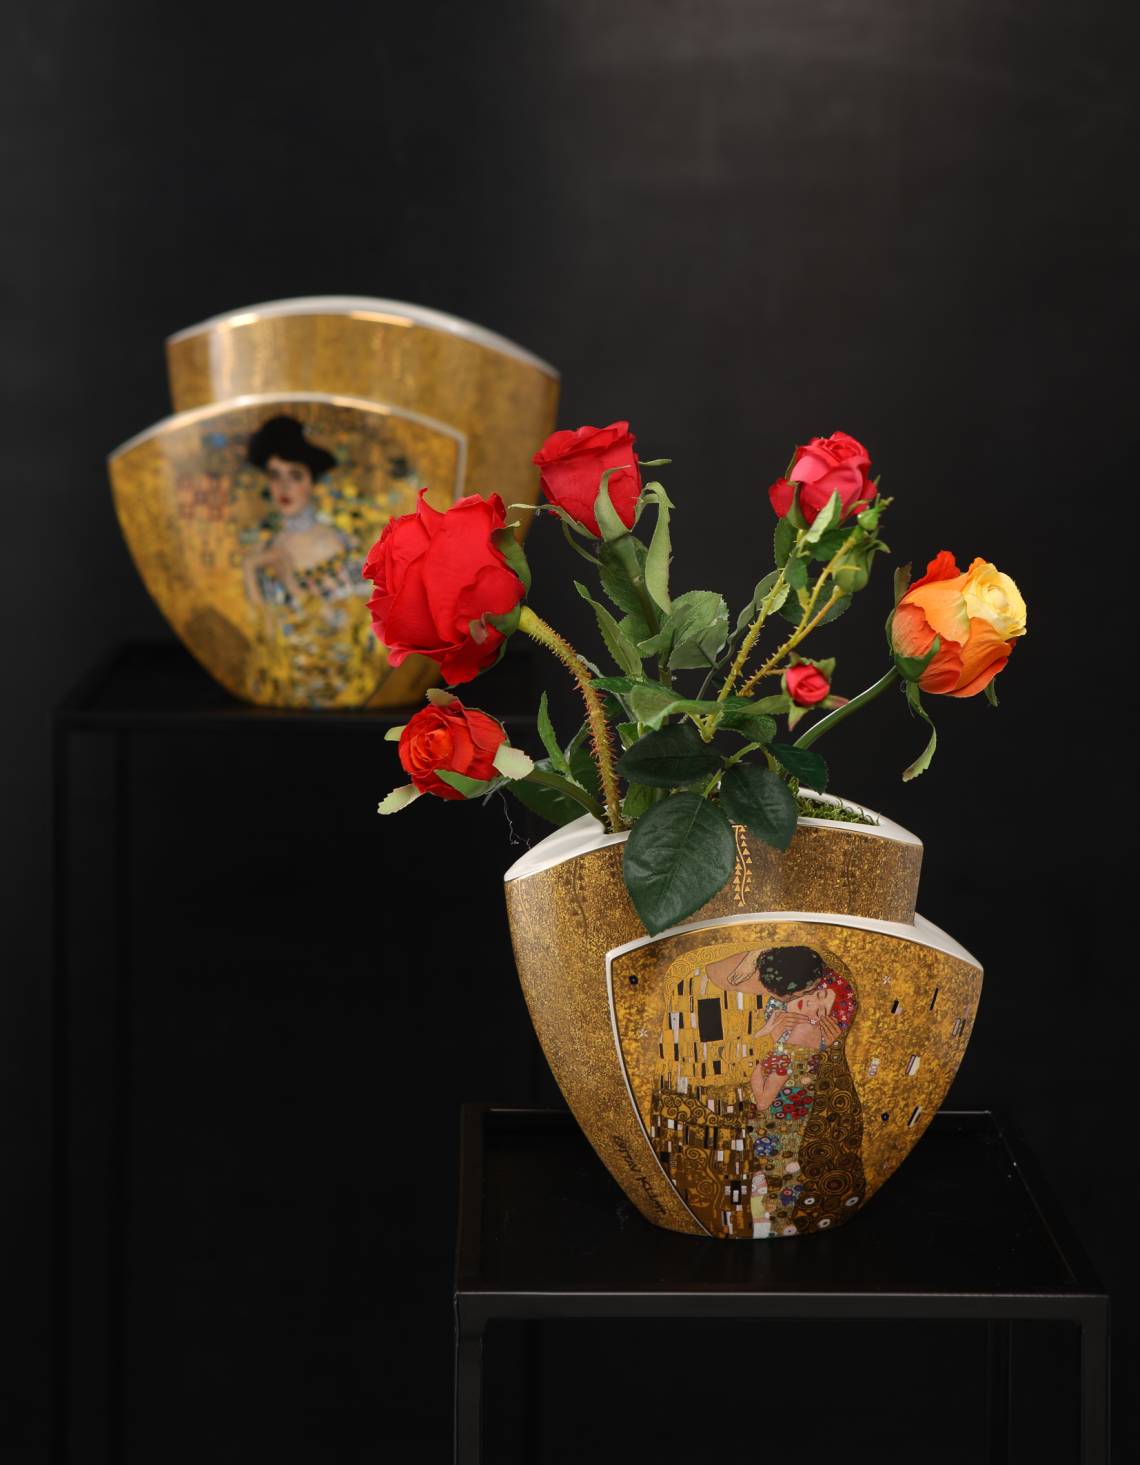 Klimts goldene Phase auf Blütenvasen von Artis Orbis bei Goebel